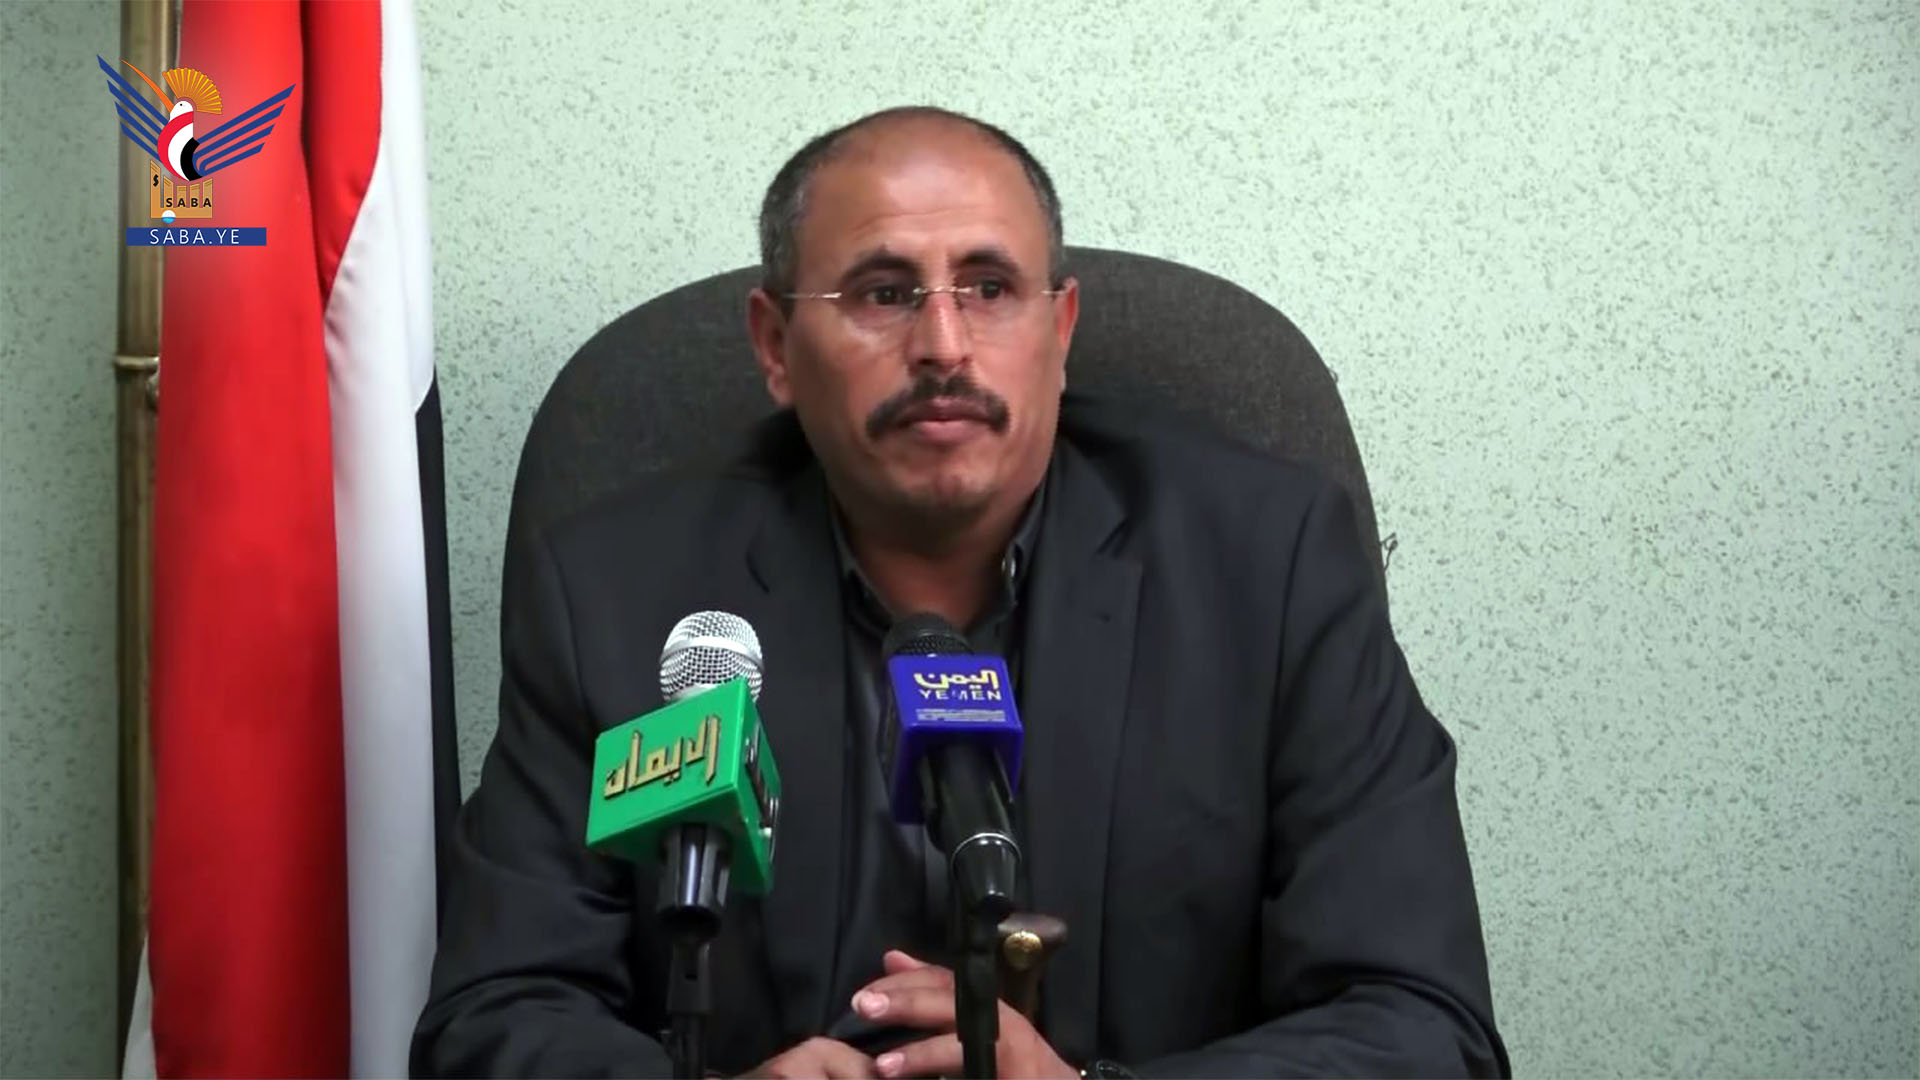 وزير الإعلام في حكومة "الإنقاذ الوطني [غير معترف بها]" المشكلة من جماعة "الحوثي" اليمنية، ضيف الله الشامي (سبأ)